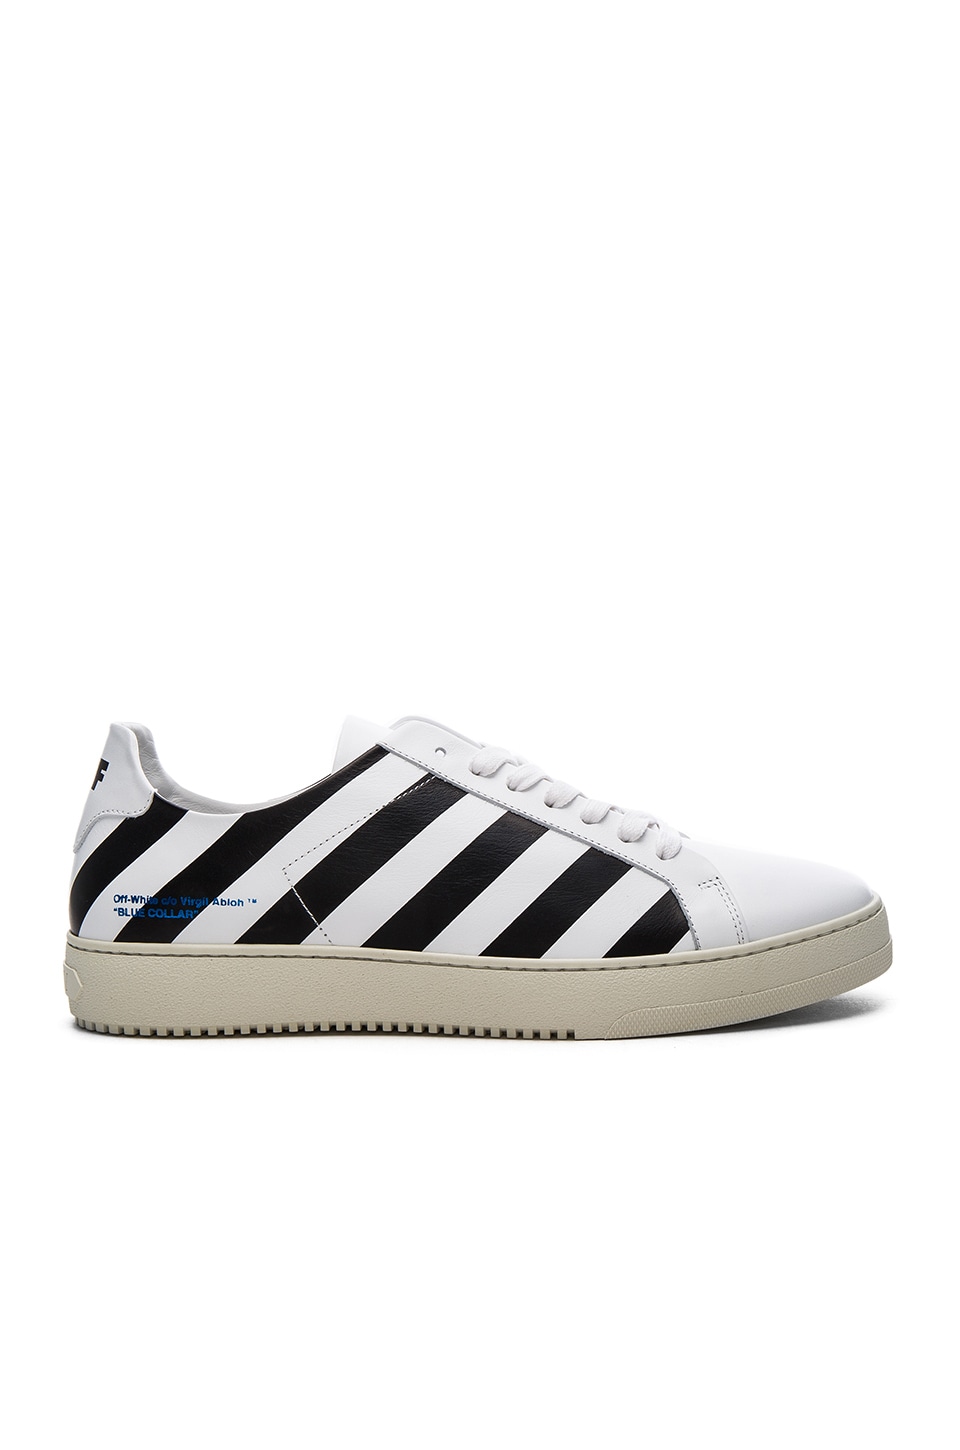 white sneakers black stripes